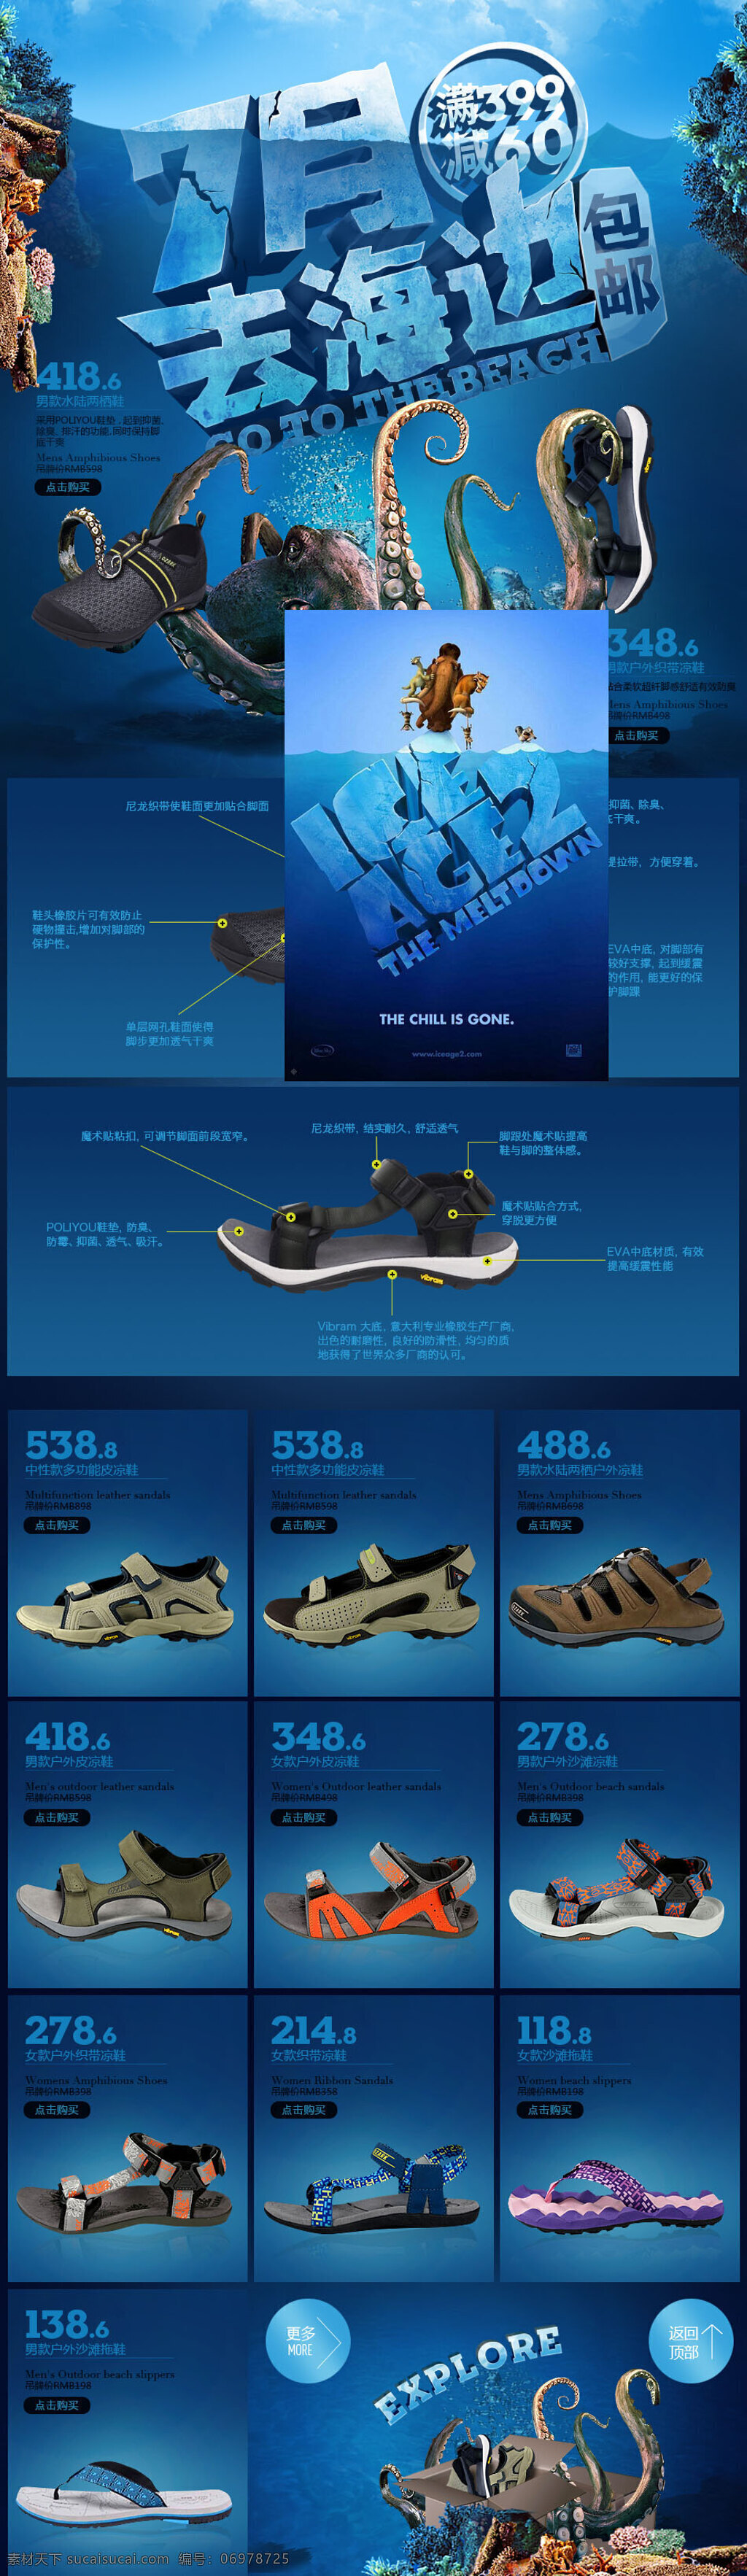 淘宝 沙滩鞋 促销活动 店铺首页海报 大图海报 psd海报 天猫 蓝色